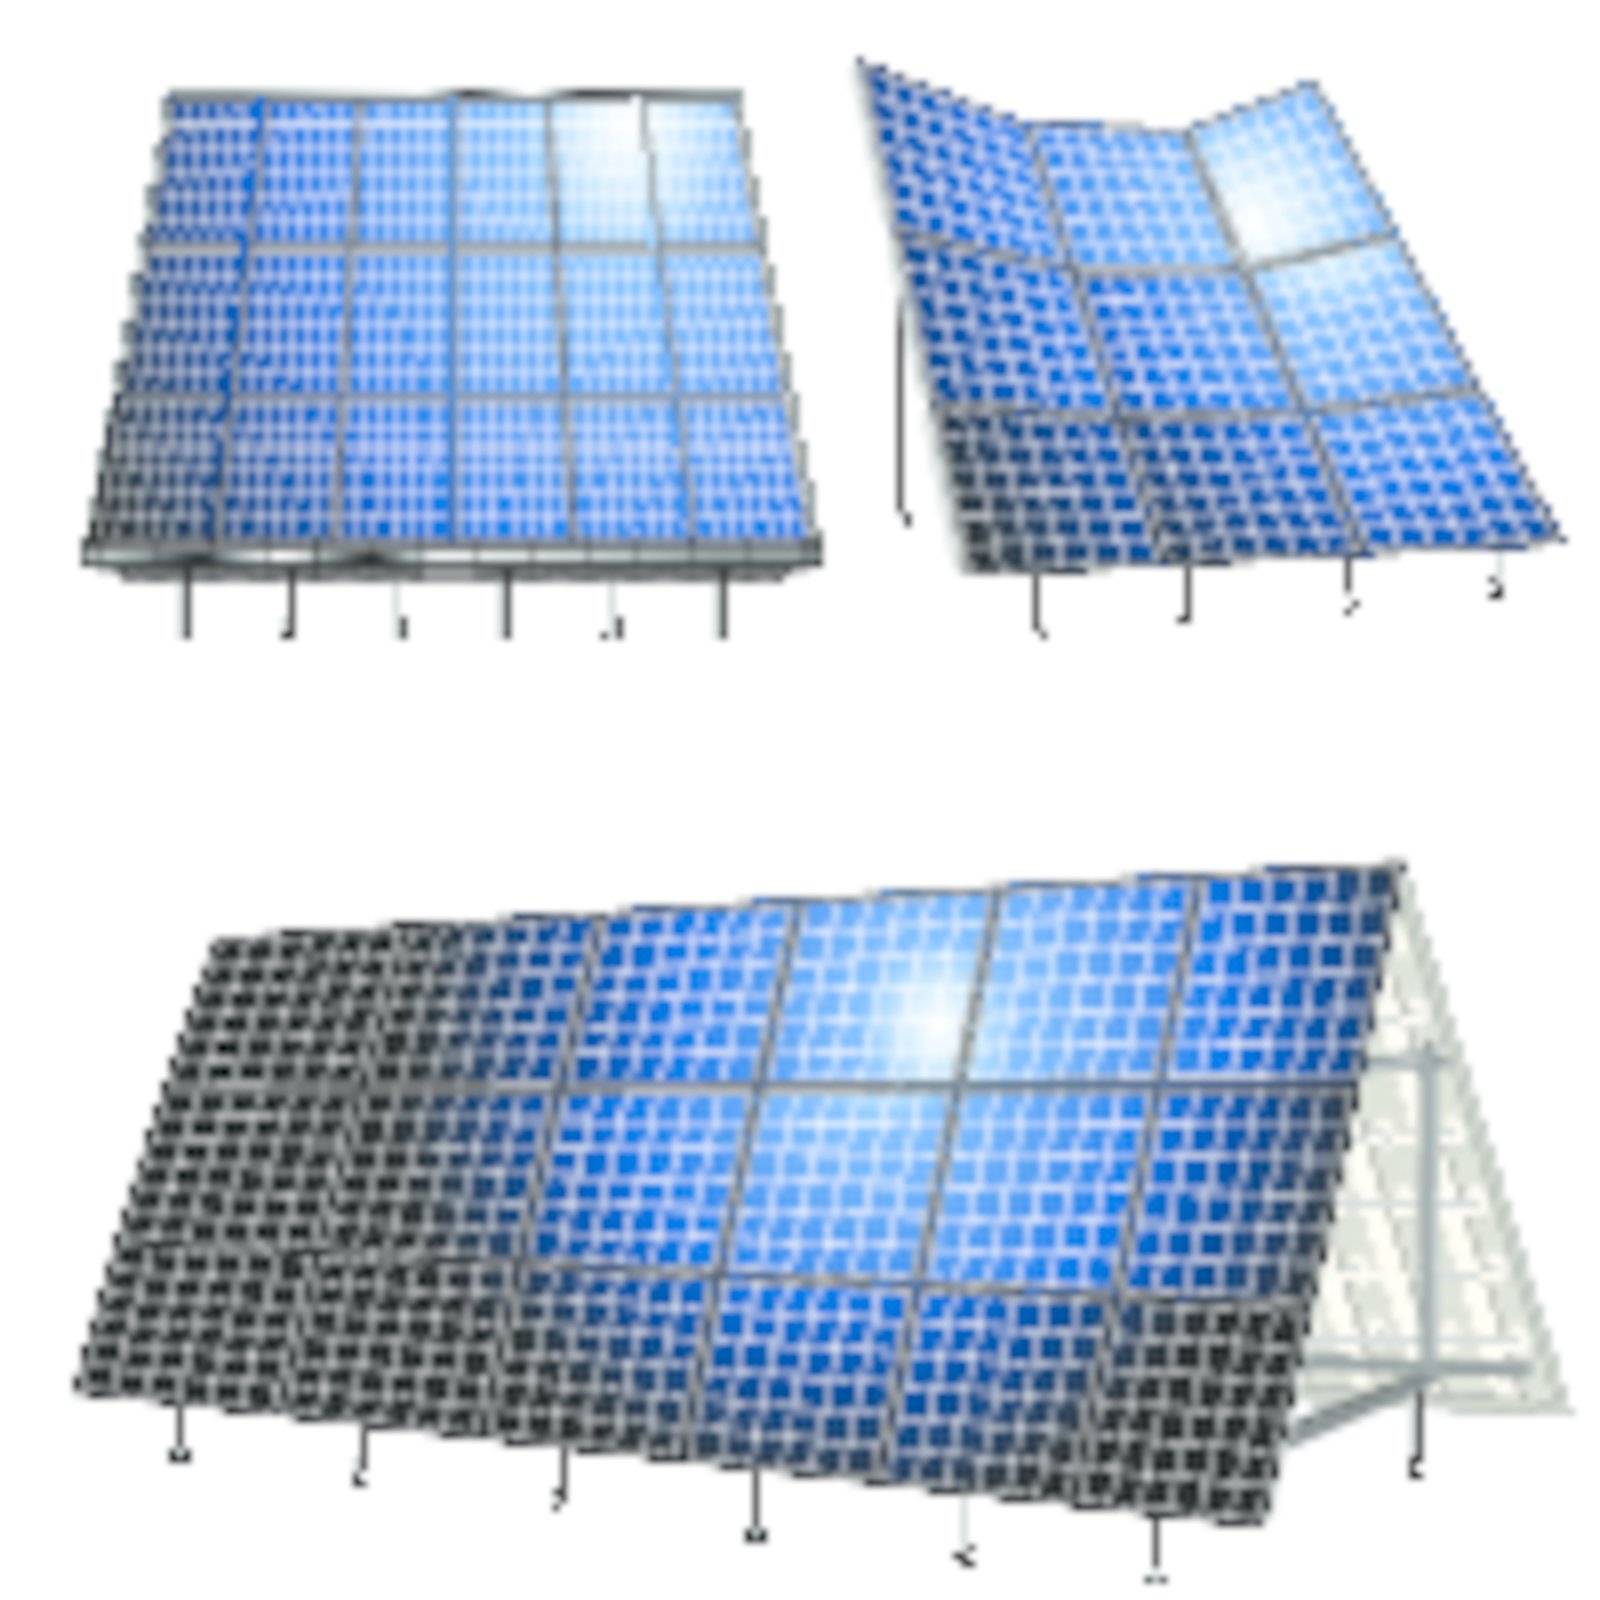 Alternative energy, solar panels over white background